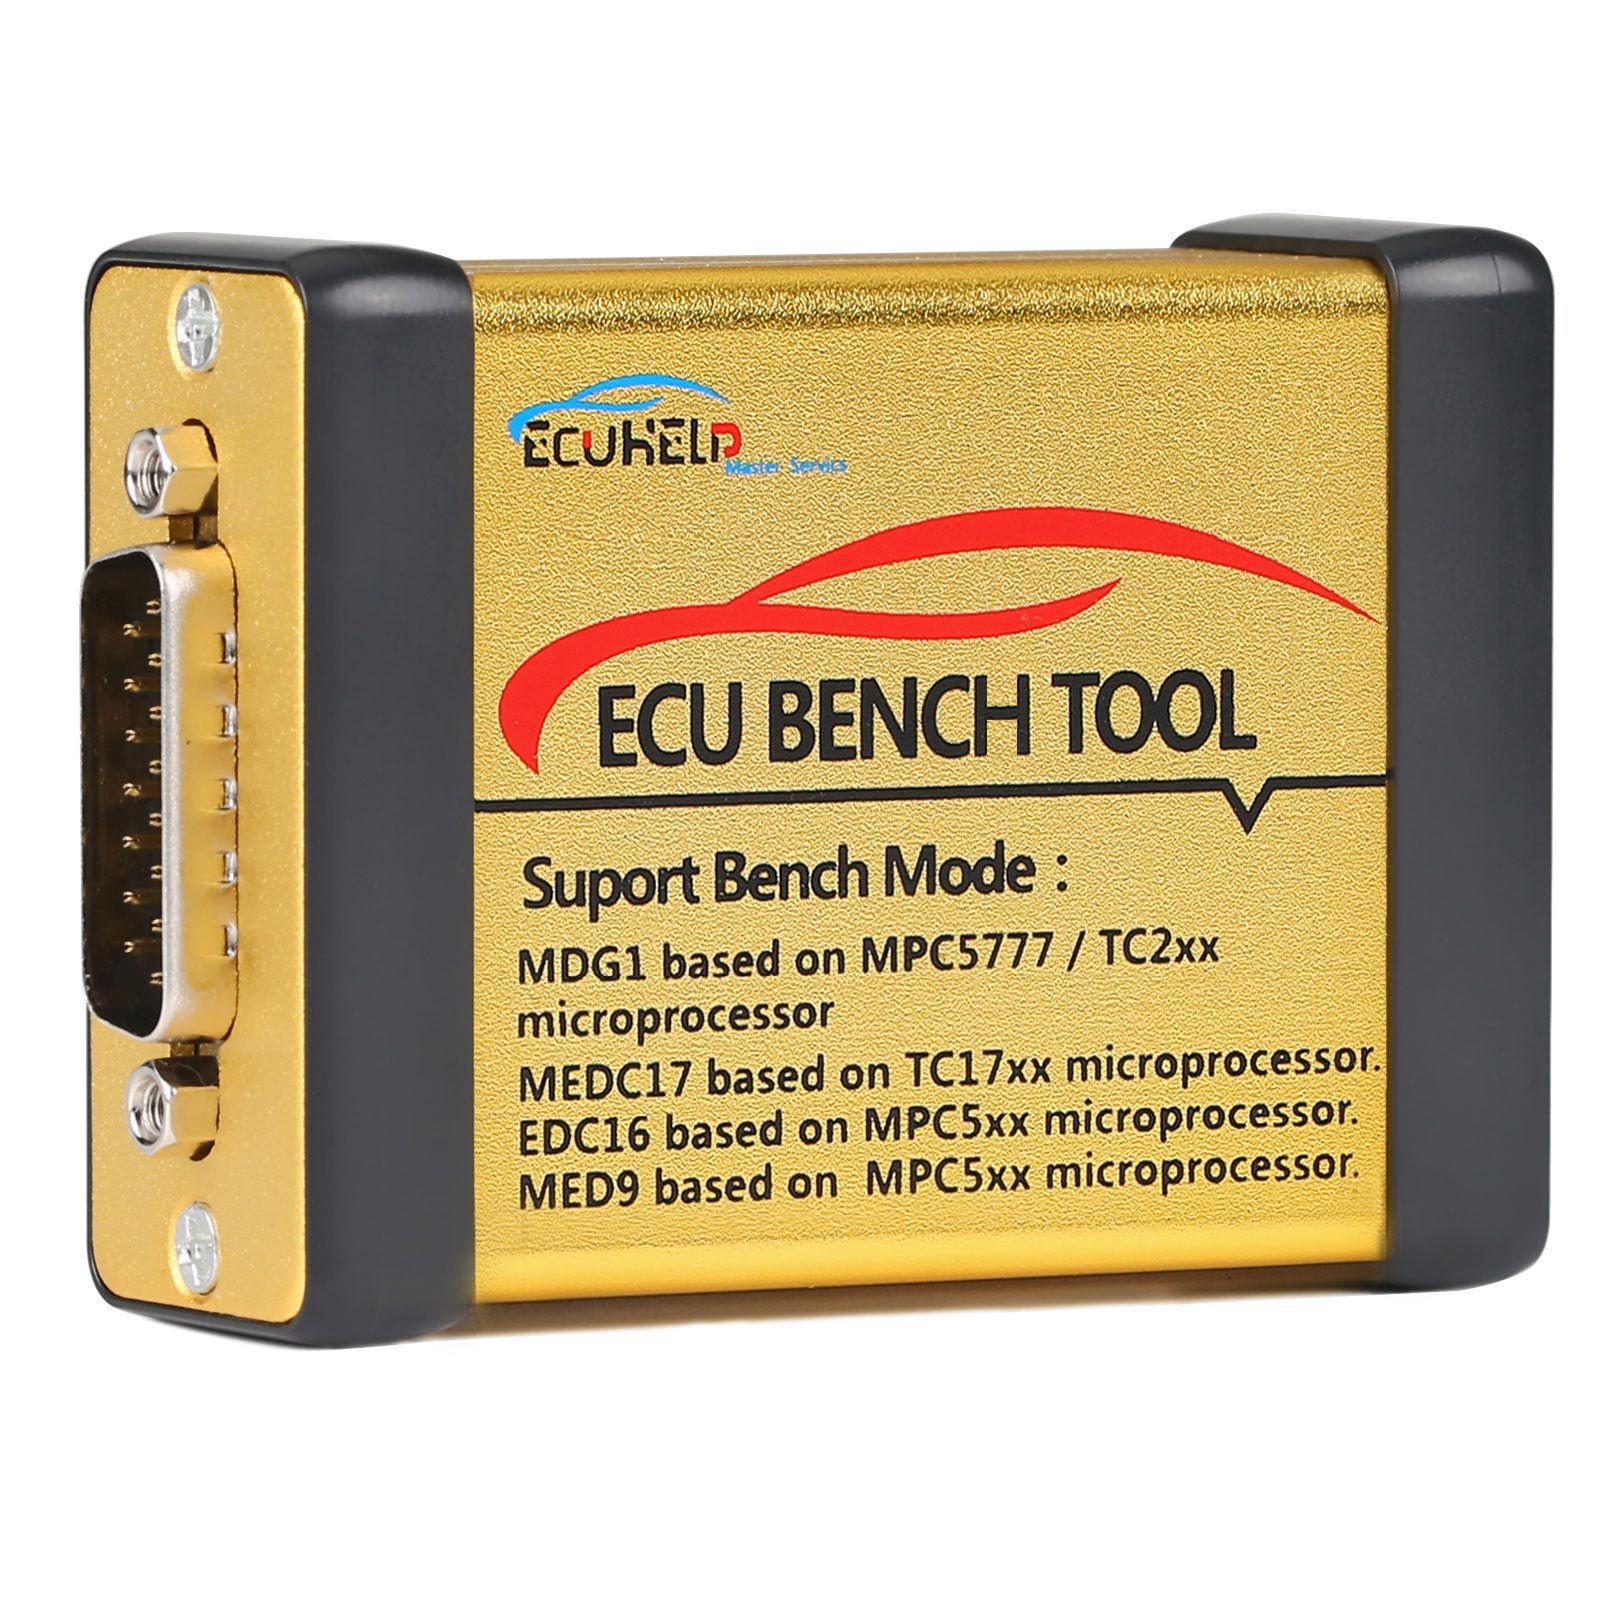 2023 ECUHelp ECU Bench Tool Versão Completa com Licença Suporta MD1 MG1 EDC16 MED9 Nenhuma Necessidade de Abrir ECU